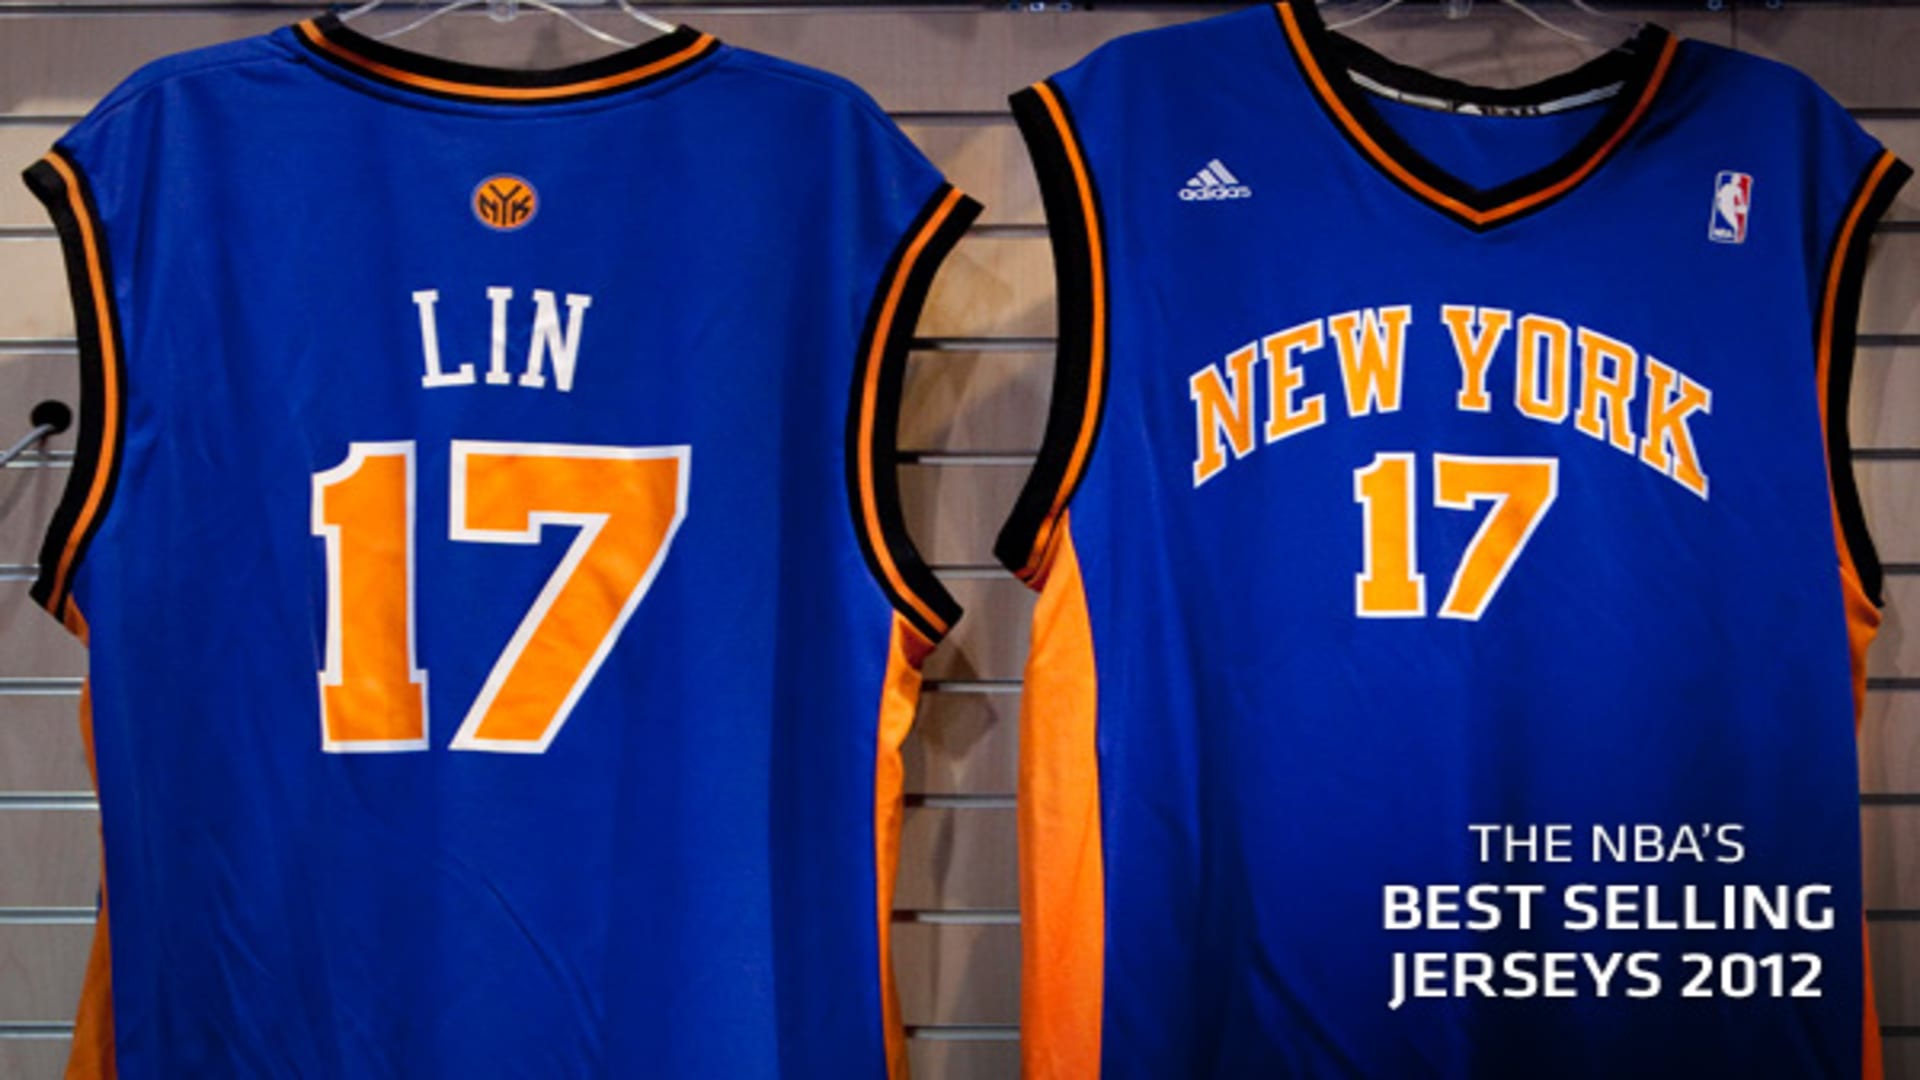 The NBA's Best Selling Jerseys 2012